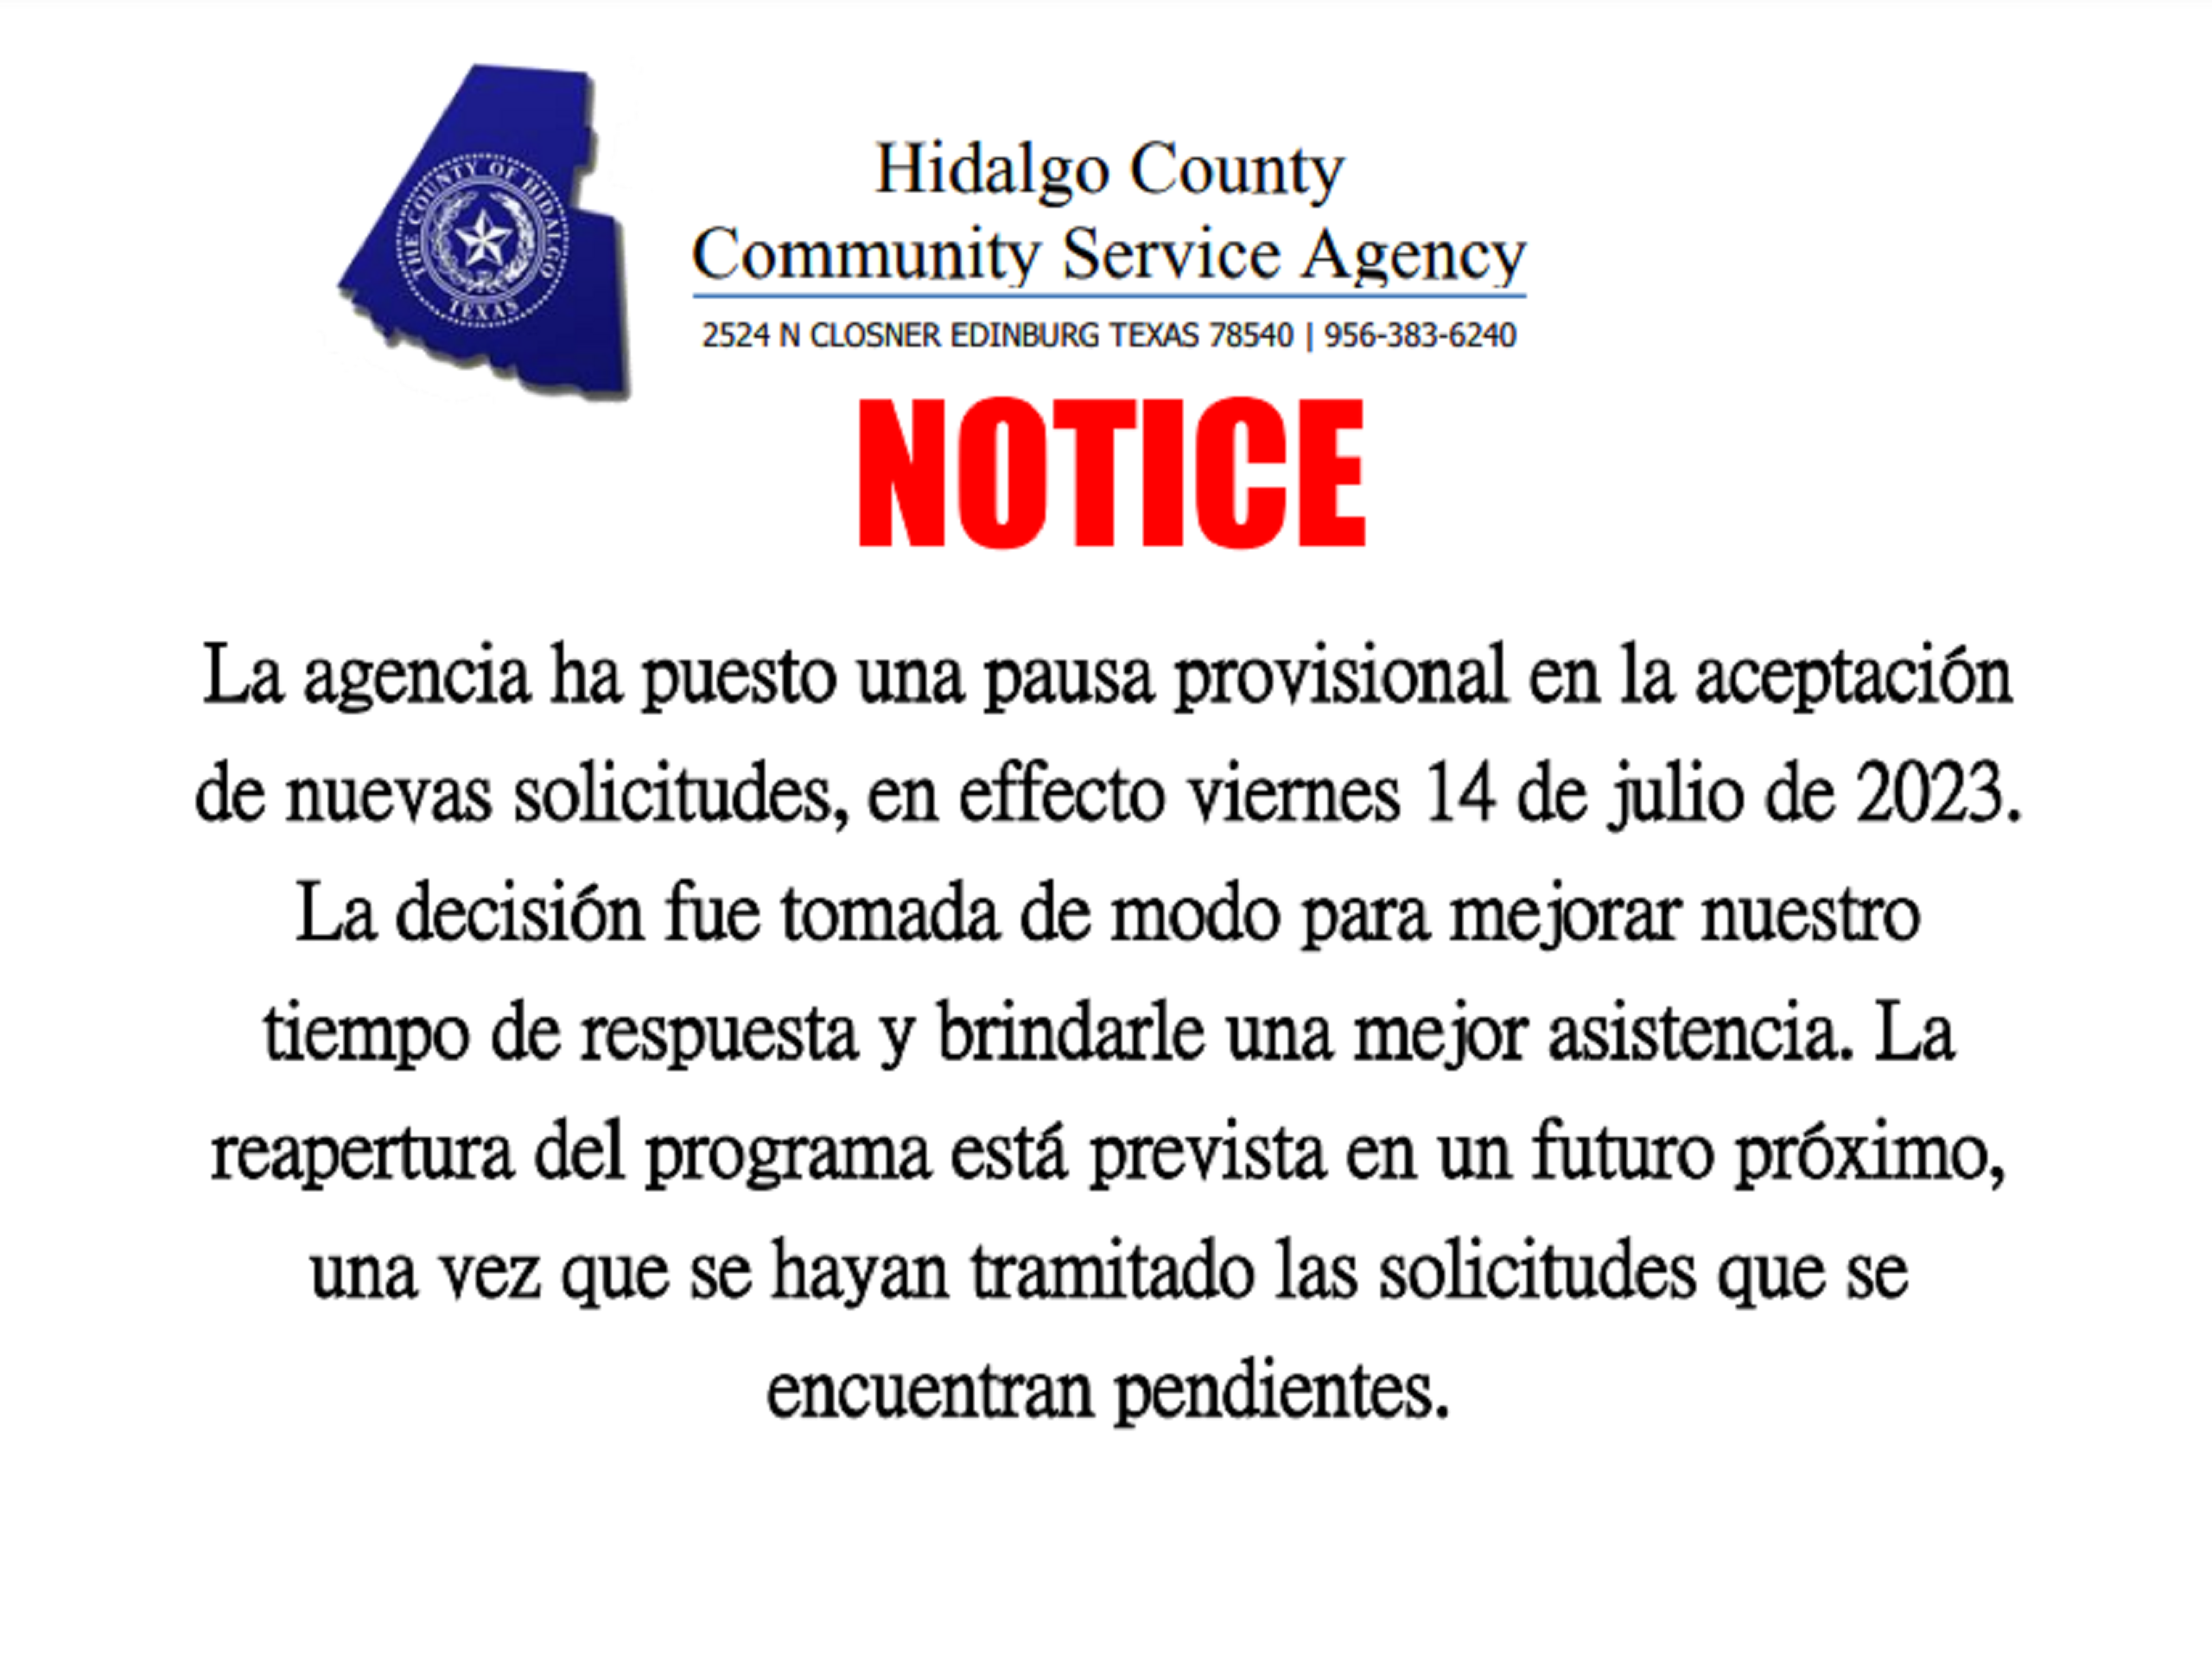 HCCSA Hidalgo County Community Service Agency